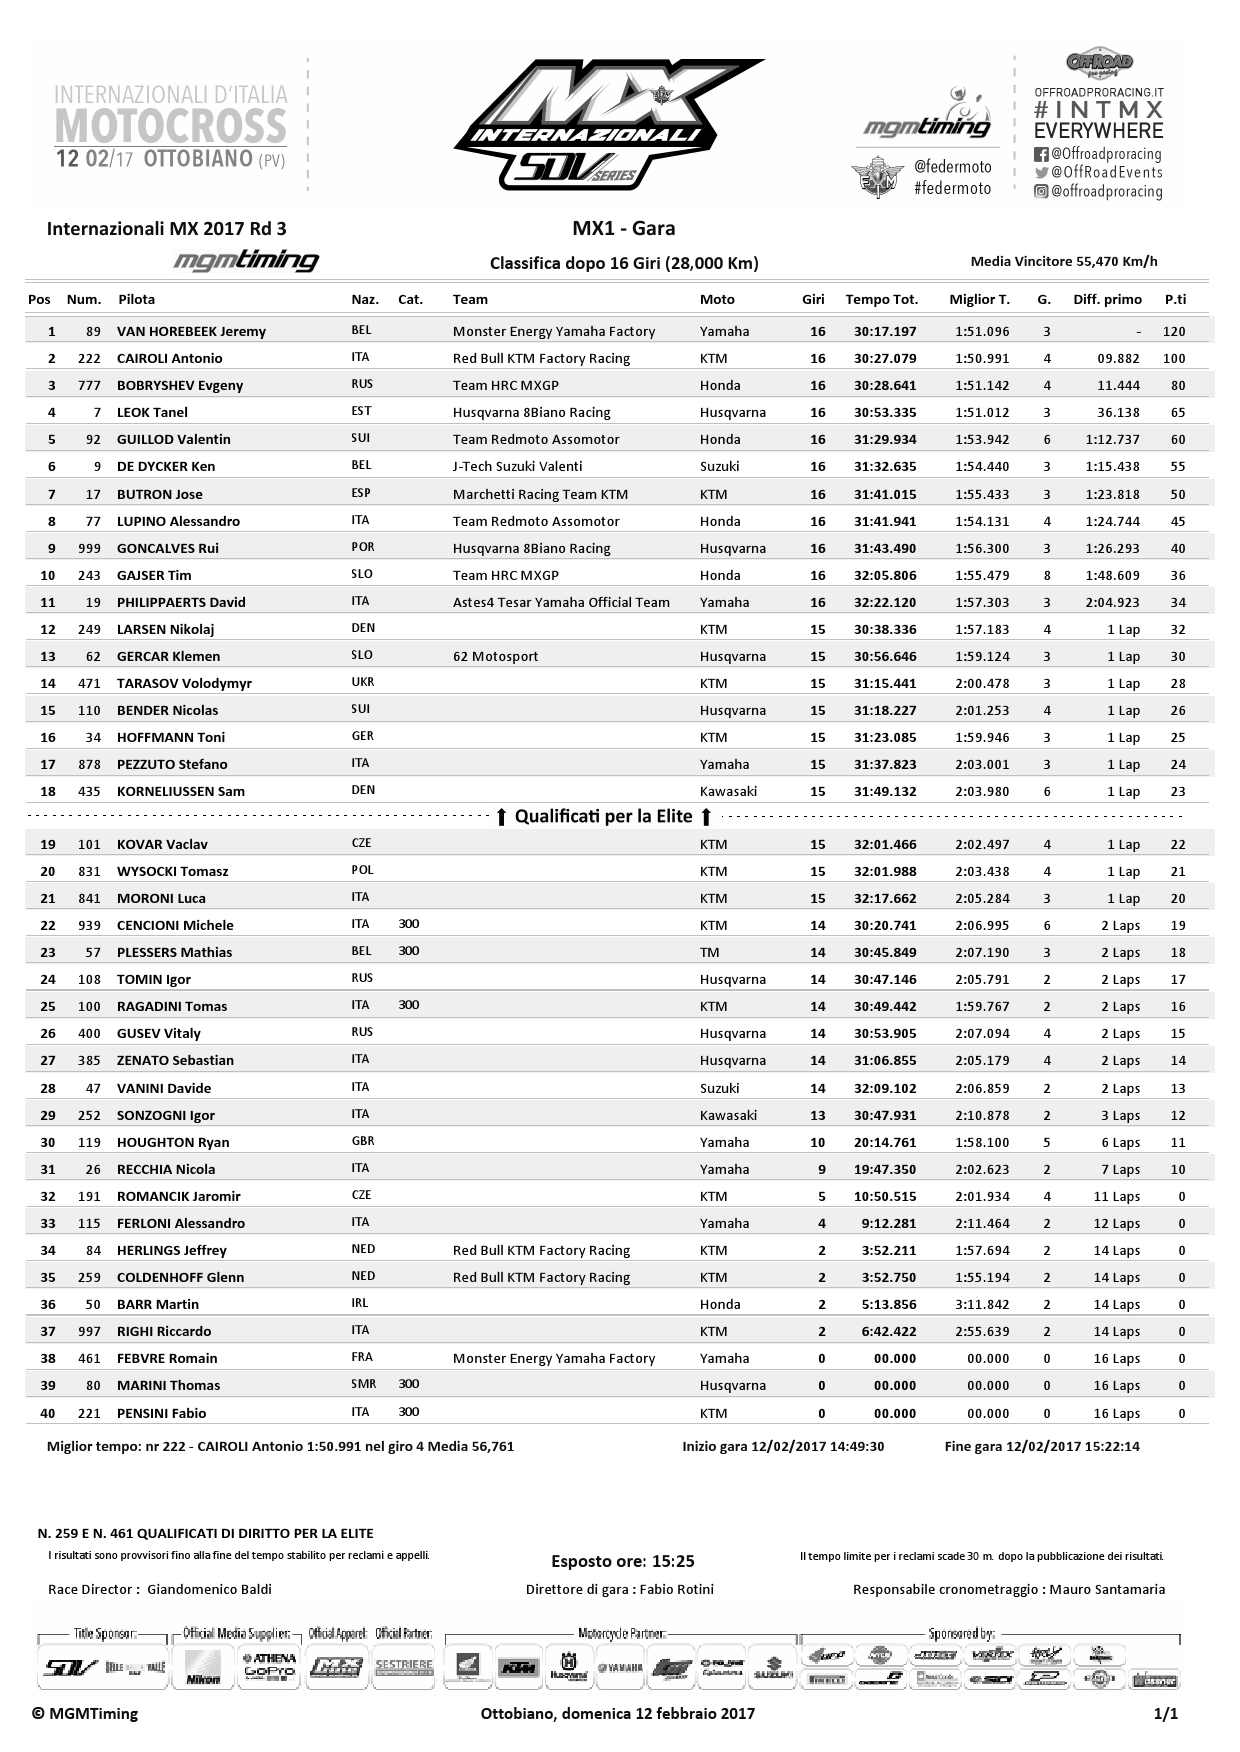 Результаты 3-го этапа Чемпионата Италии по мотокроссу MX1 